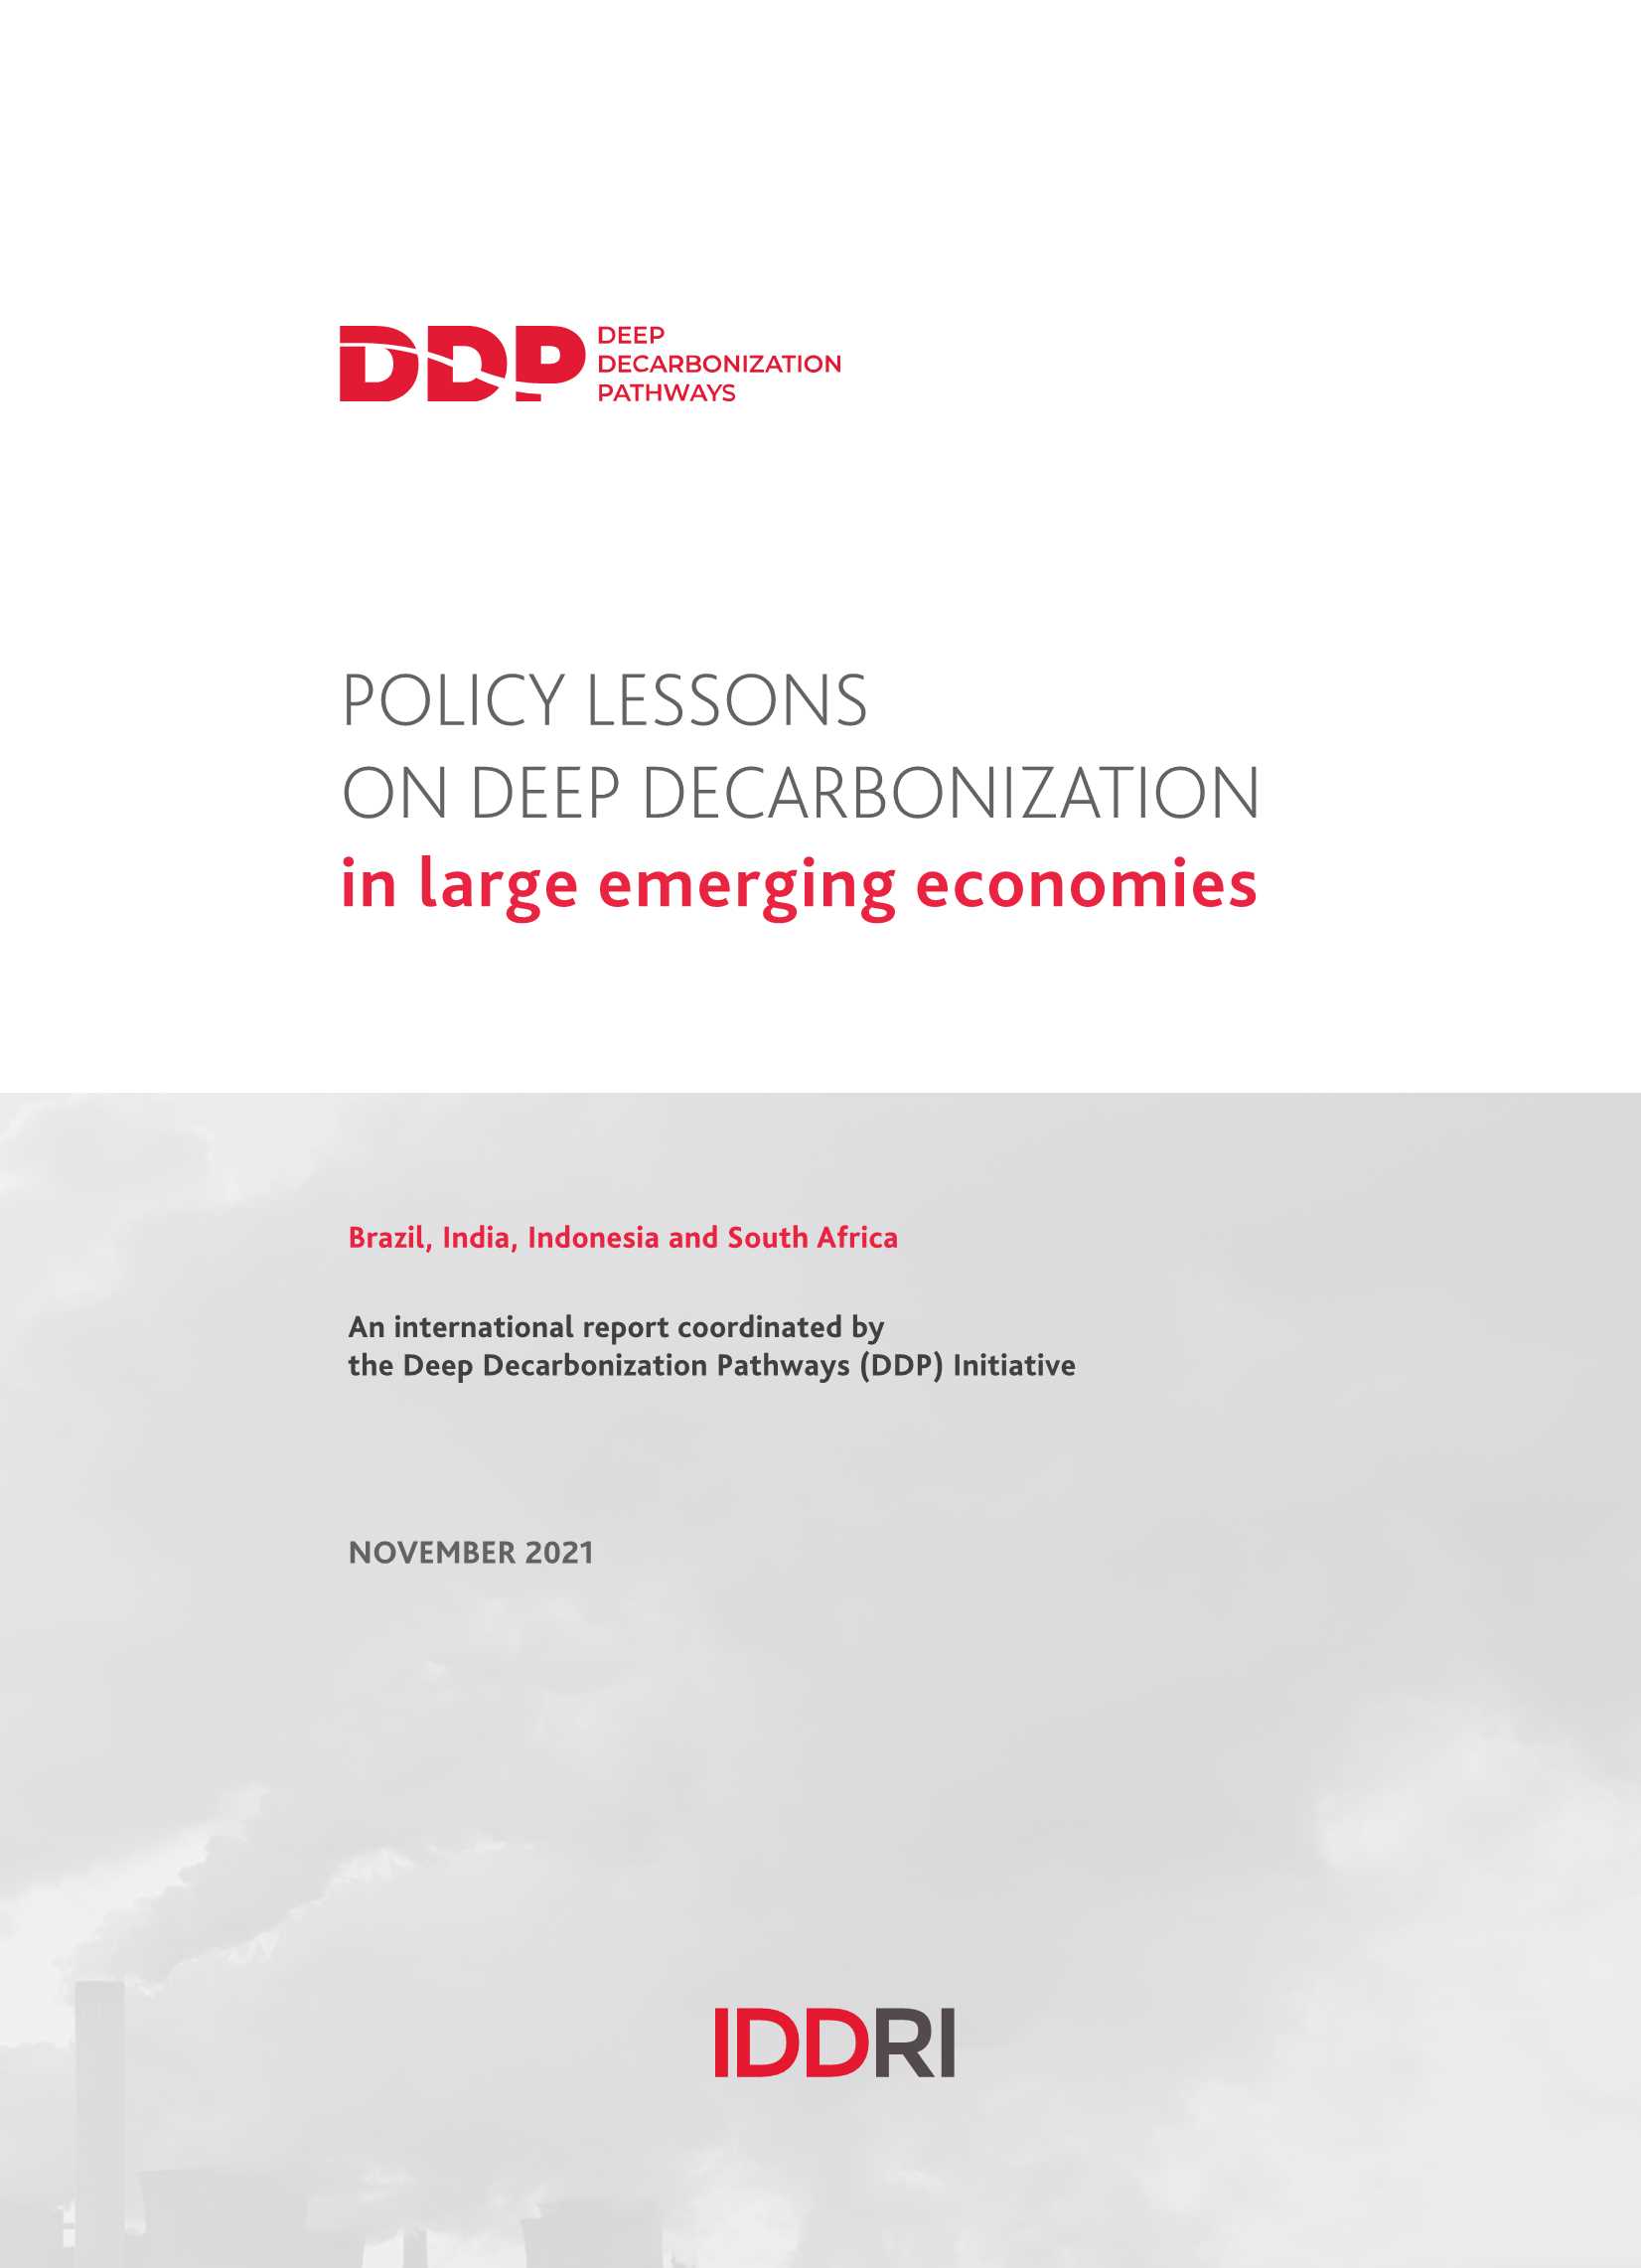 可持续发展与国际关系研究所-大型新兴经济体深度脱碳的政策教训（英）-2021.11-86页